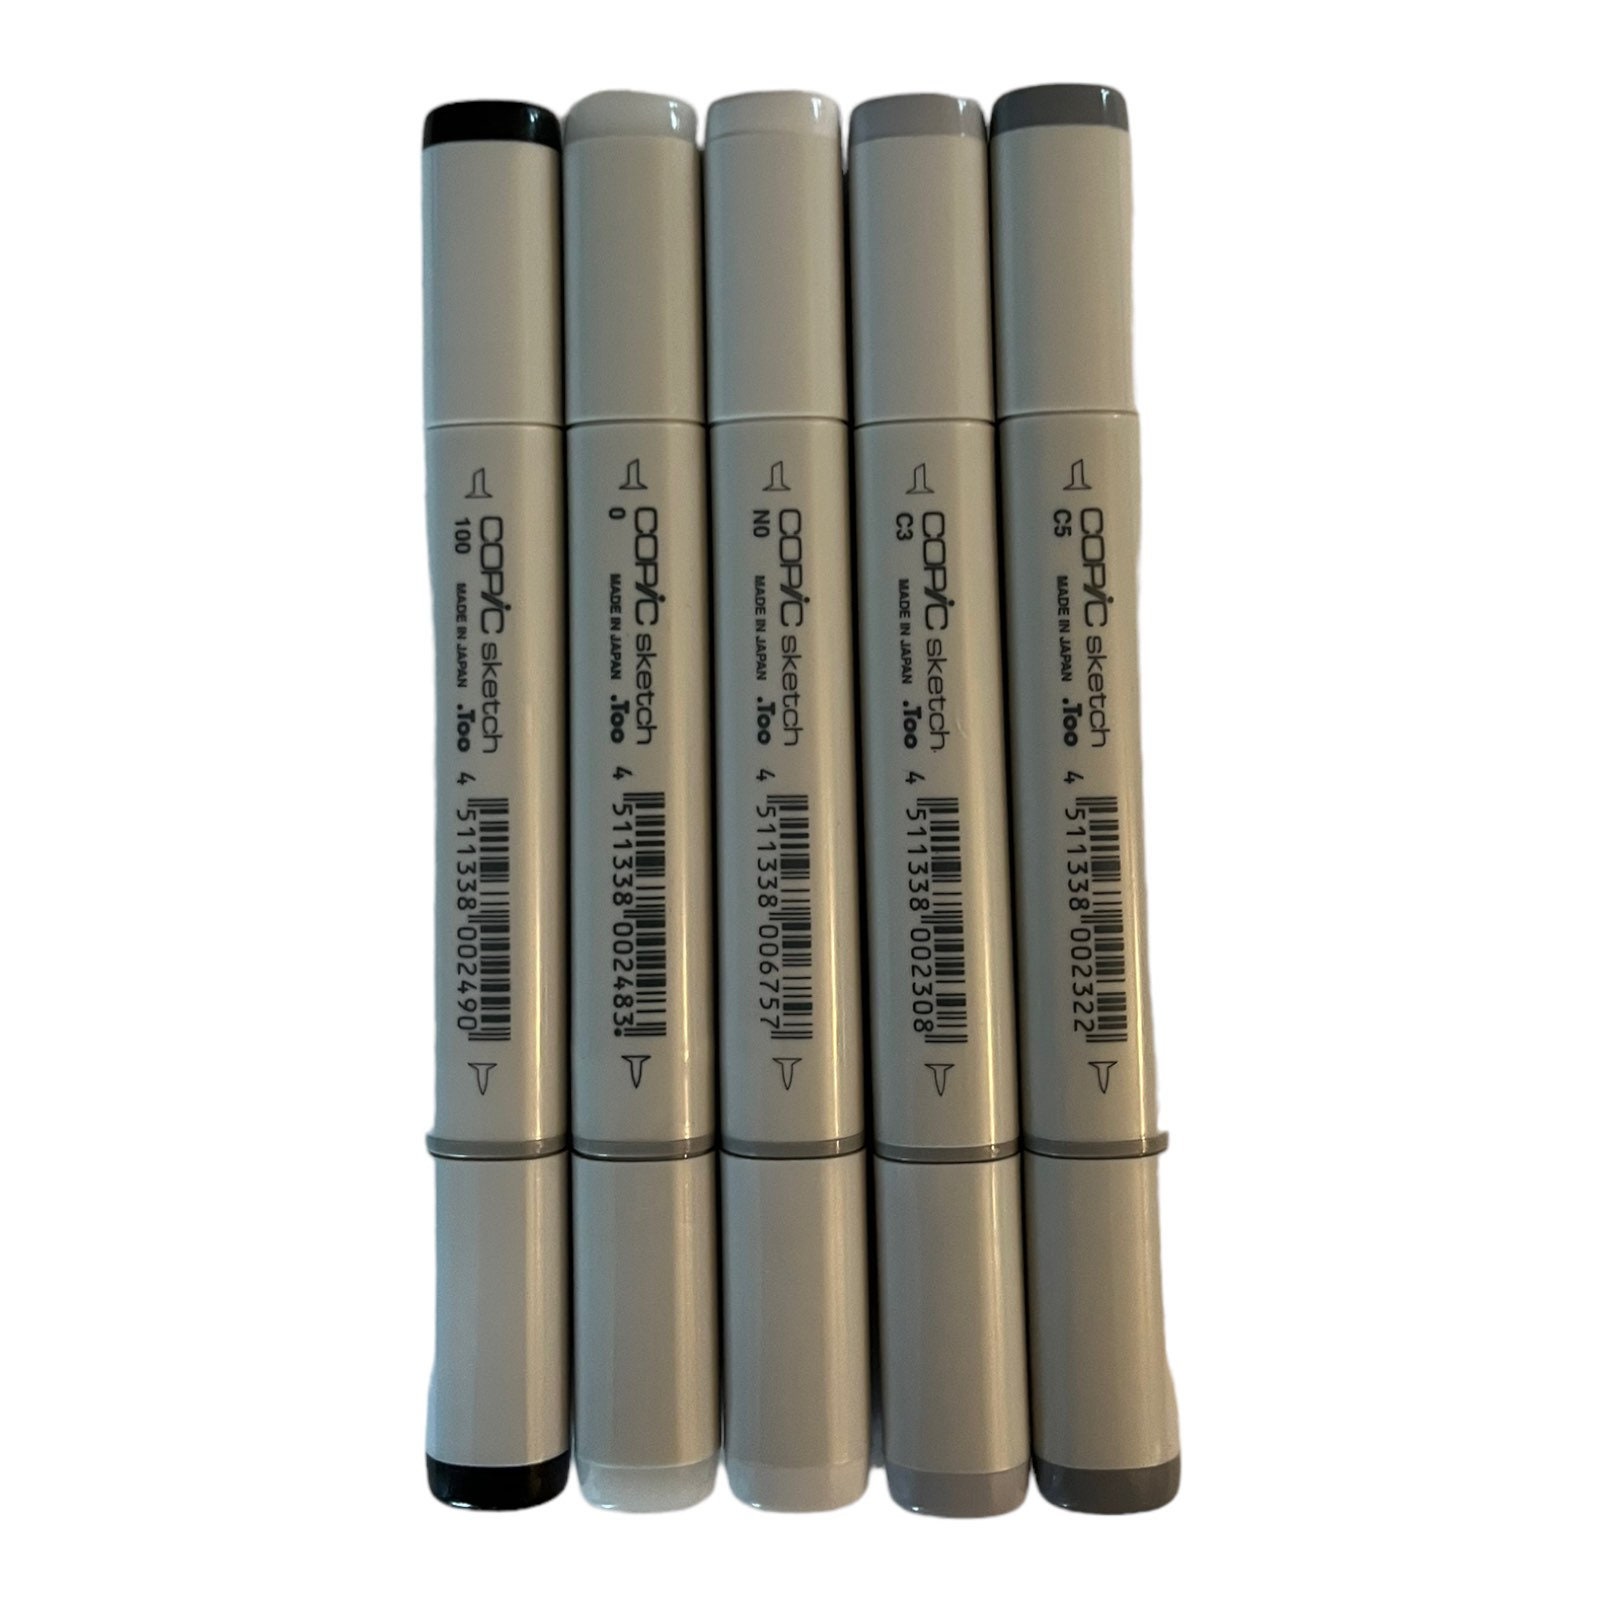 Prismacolor Colorless Blender Pencils Set of 2 Illustration, Drawing,  Blending, Shading & Rendering, Arts, Crafts 